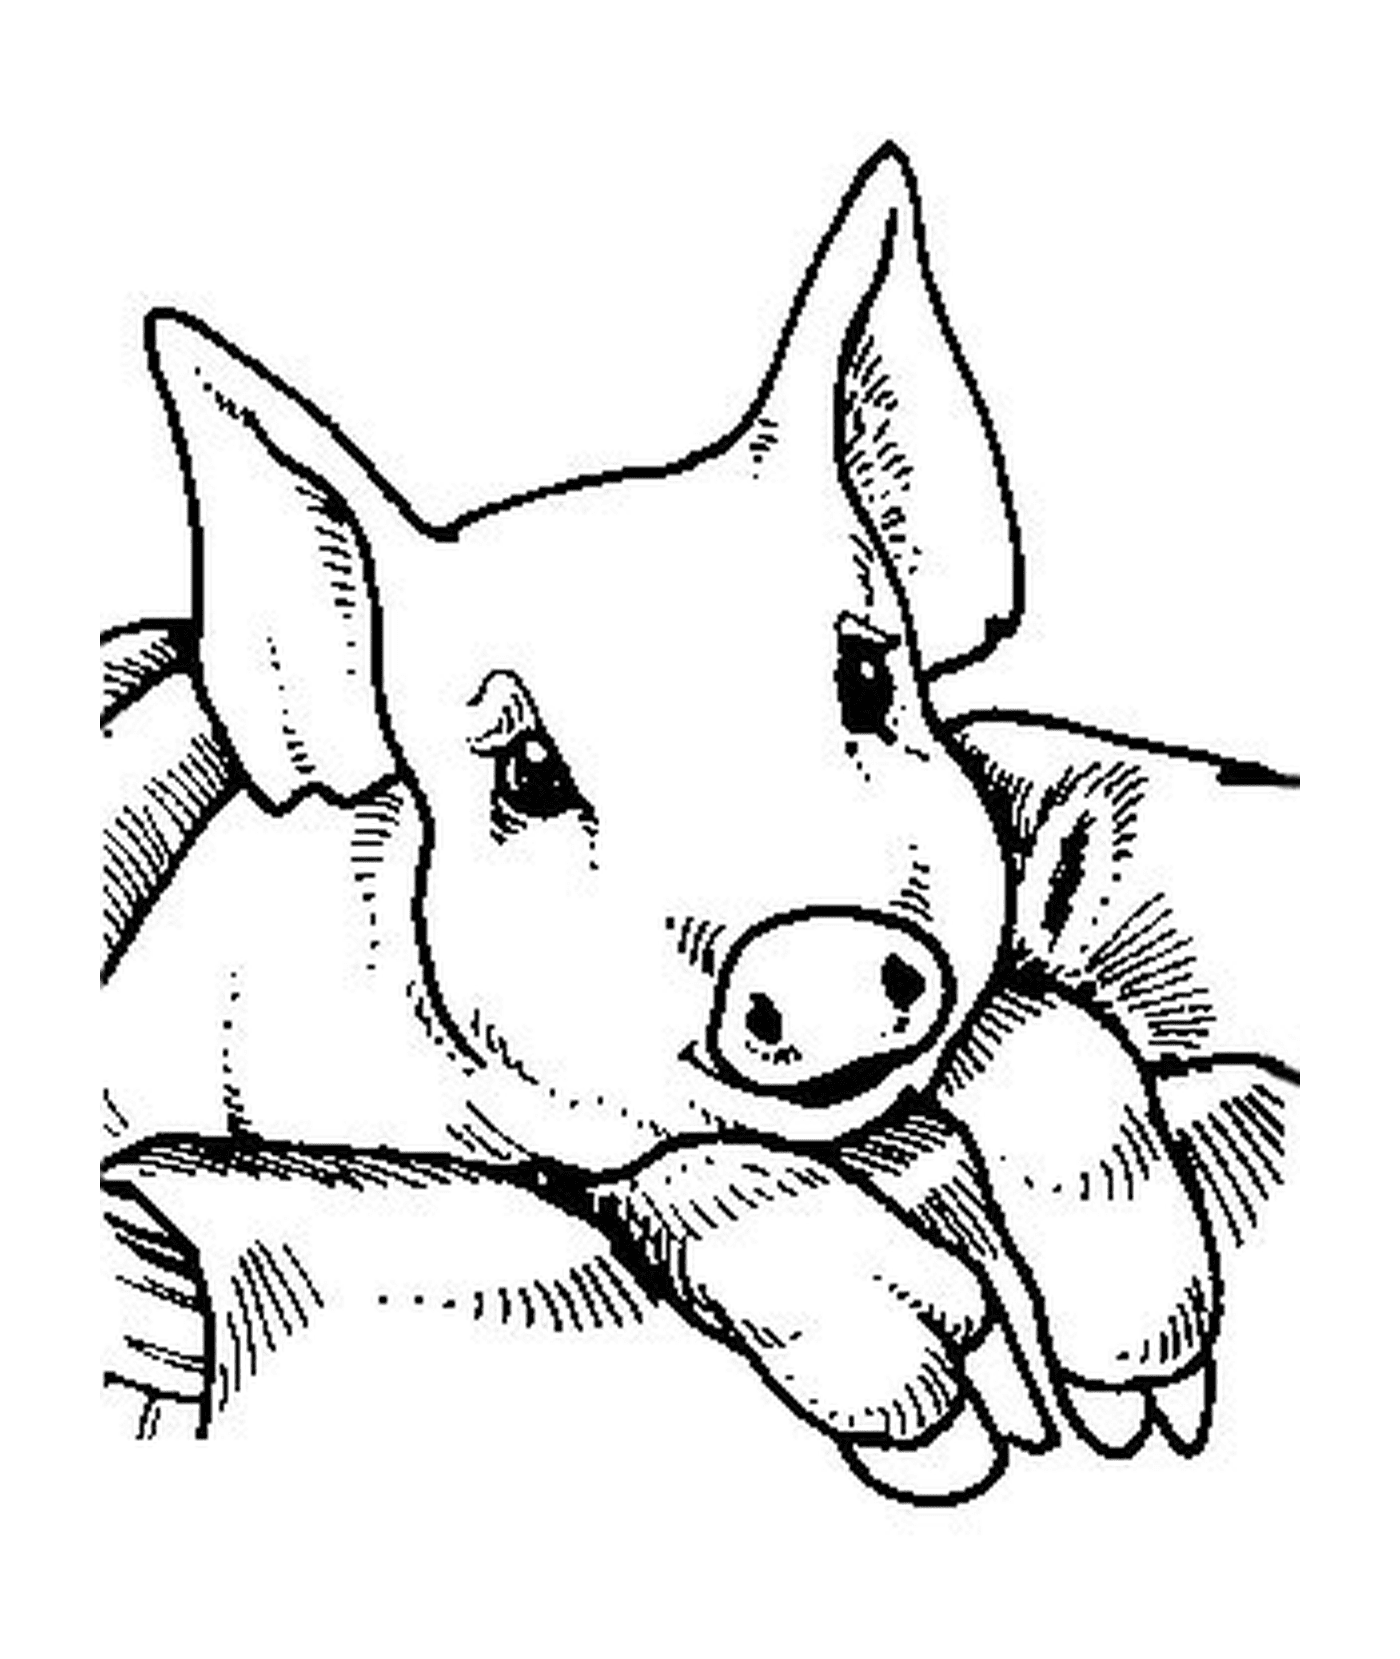  एक सूअर का बच्चा चादर पर बैठा हुआ 